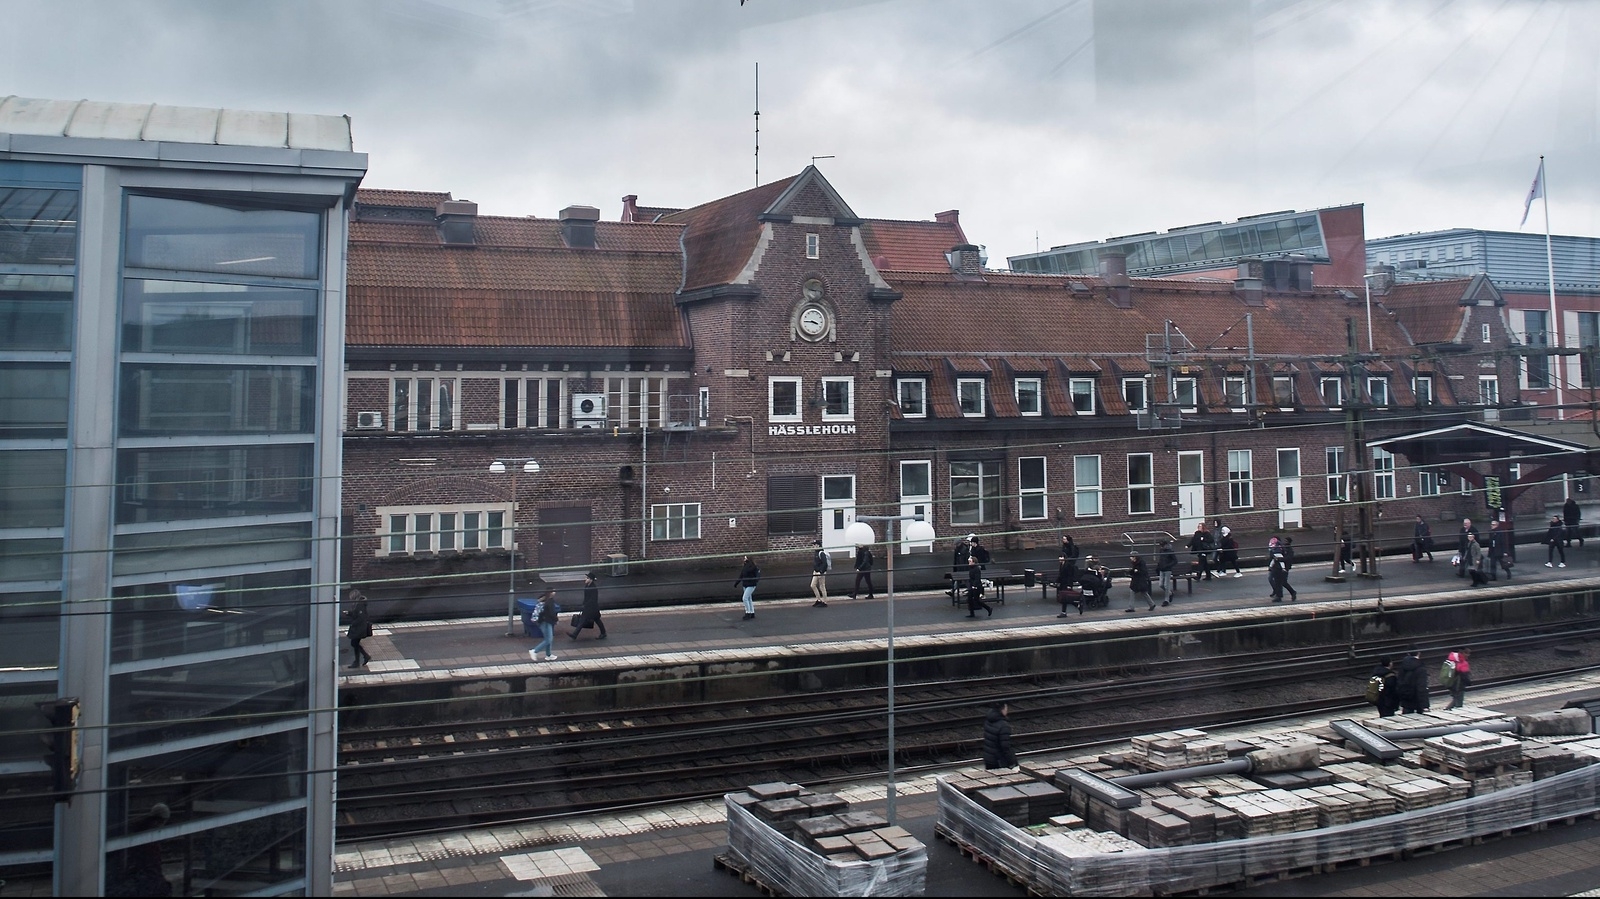 Trafikverket genomför flera olika åtgärder för att öka tillgängligheten på Hässleholms station. En av dem är att sänka plattformarna. Spår fyra och sex är därför avstängt.Foto: Sofia Åström